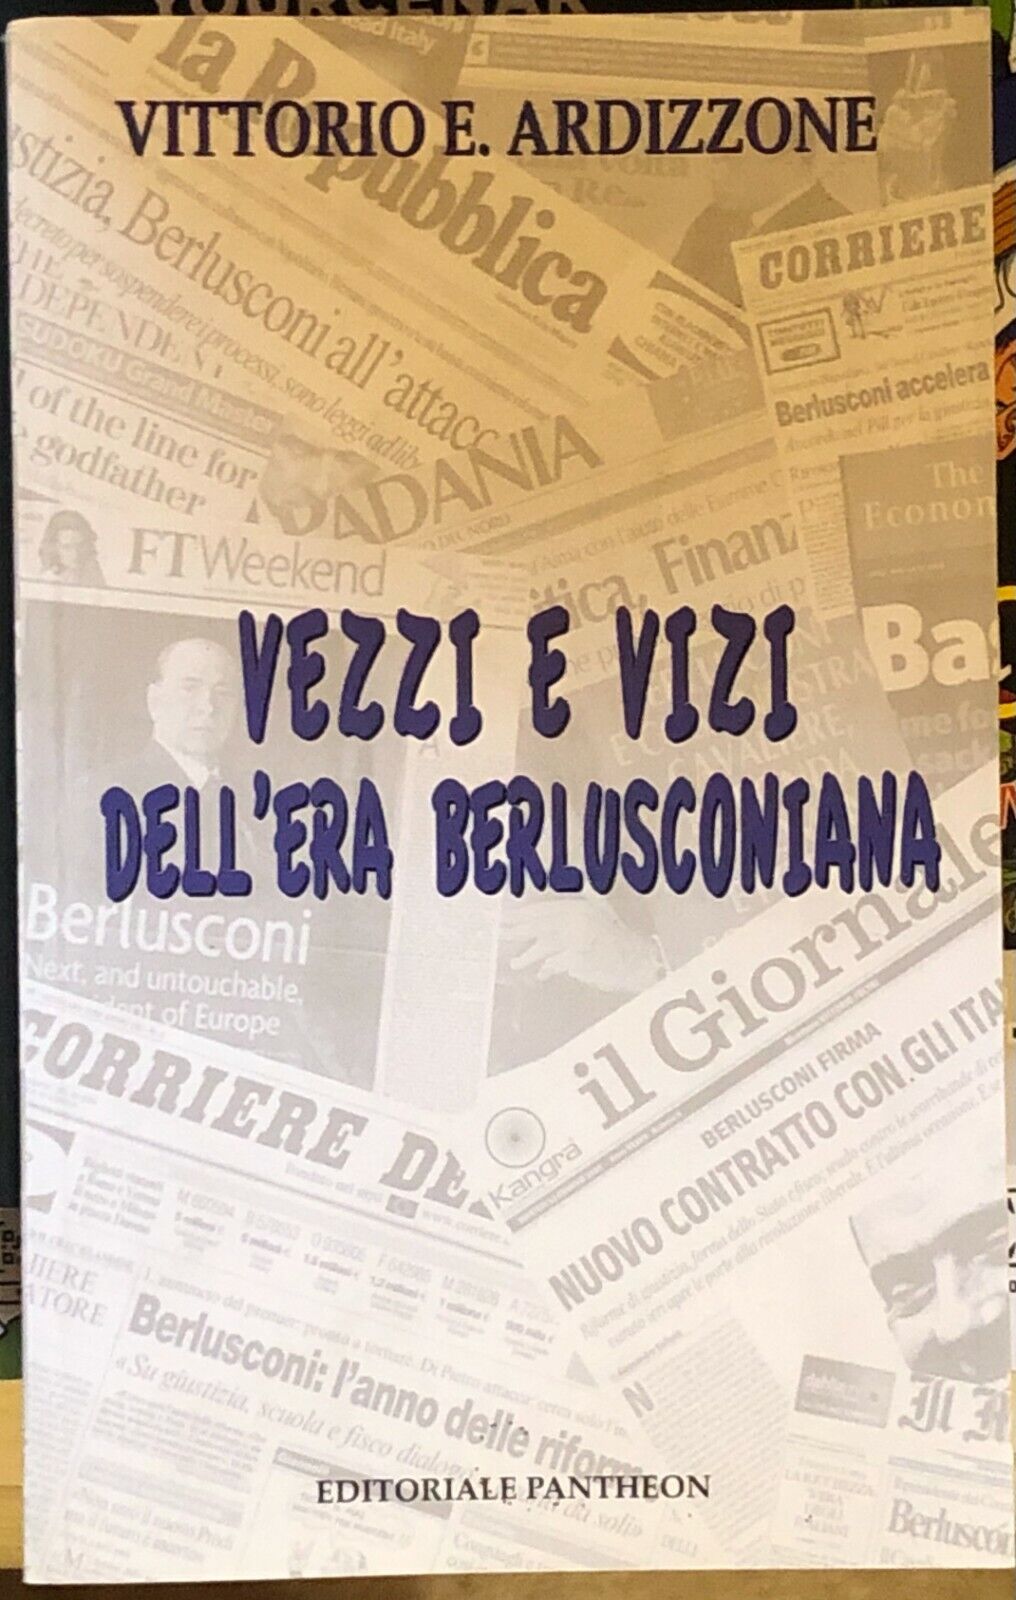 Vezzi e vizi delL'era berlusconiana di Vittorio E. Ardizzone,  2010,  Editoriale